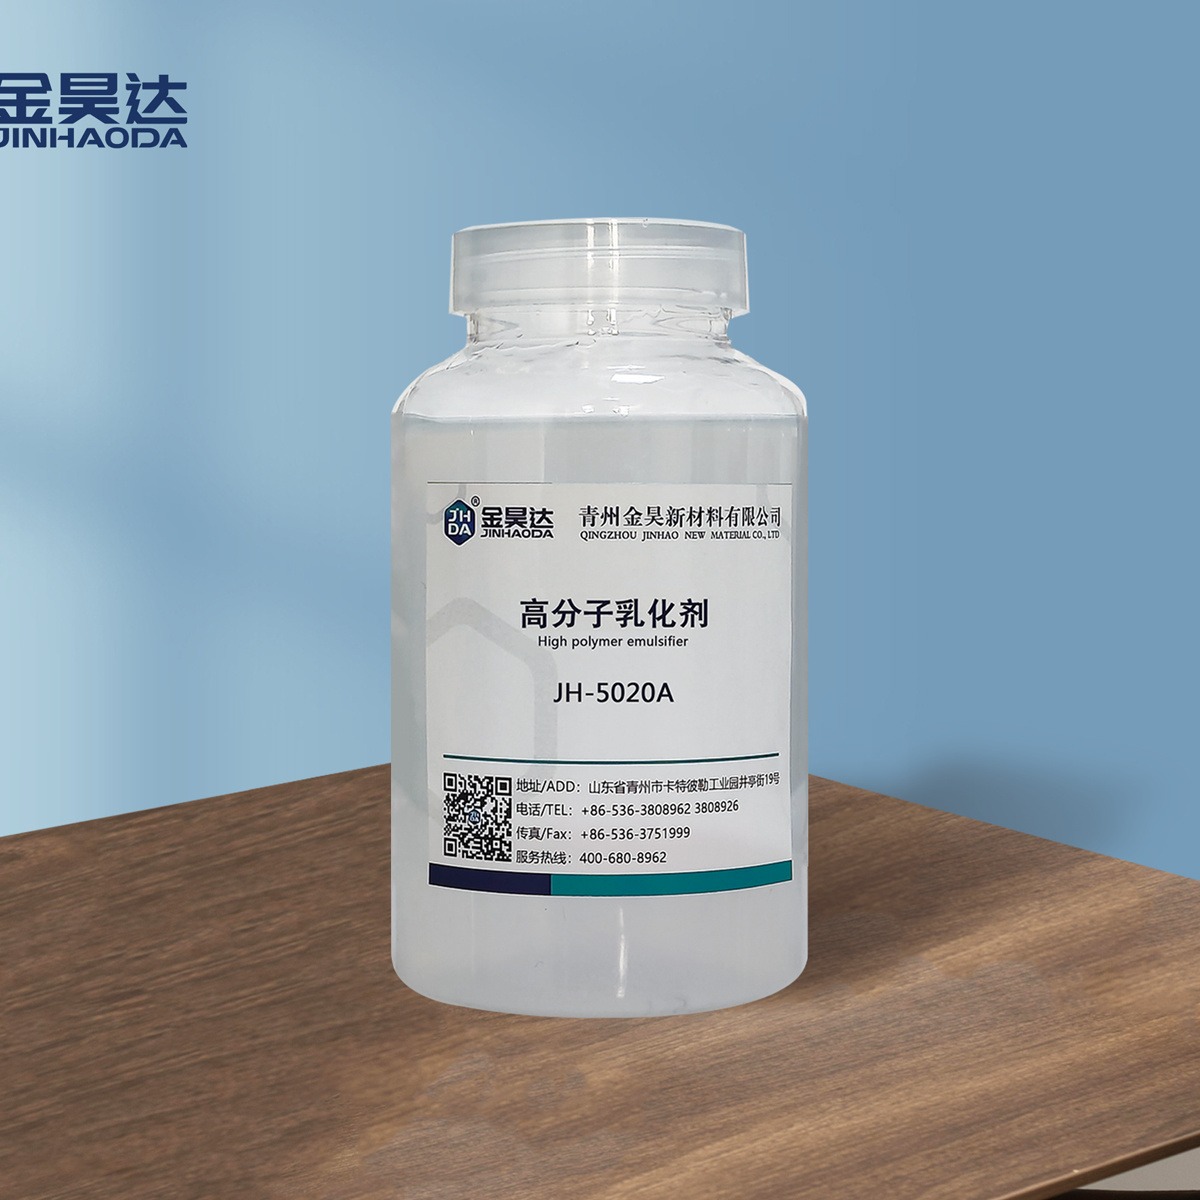 山东JH-5020A高分子akd乳化剂生产厂家 金昊高分子乳化剂 AKD乳化剂